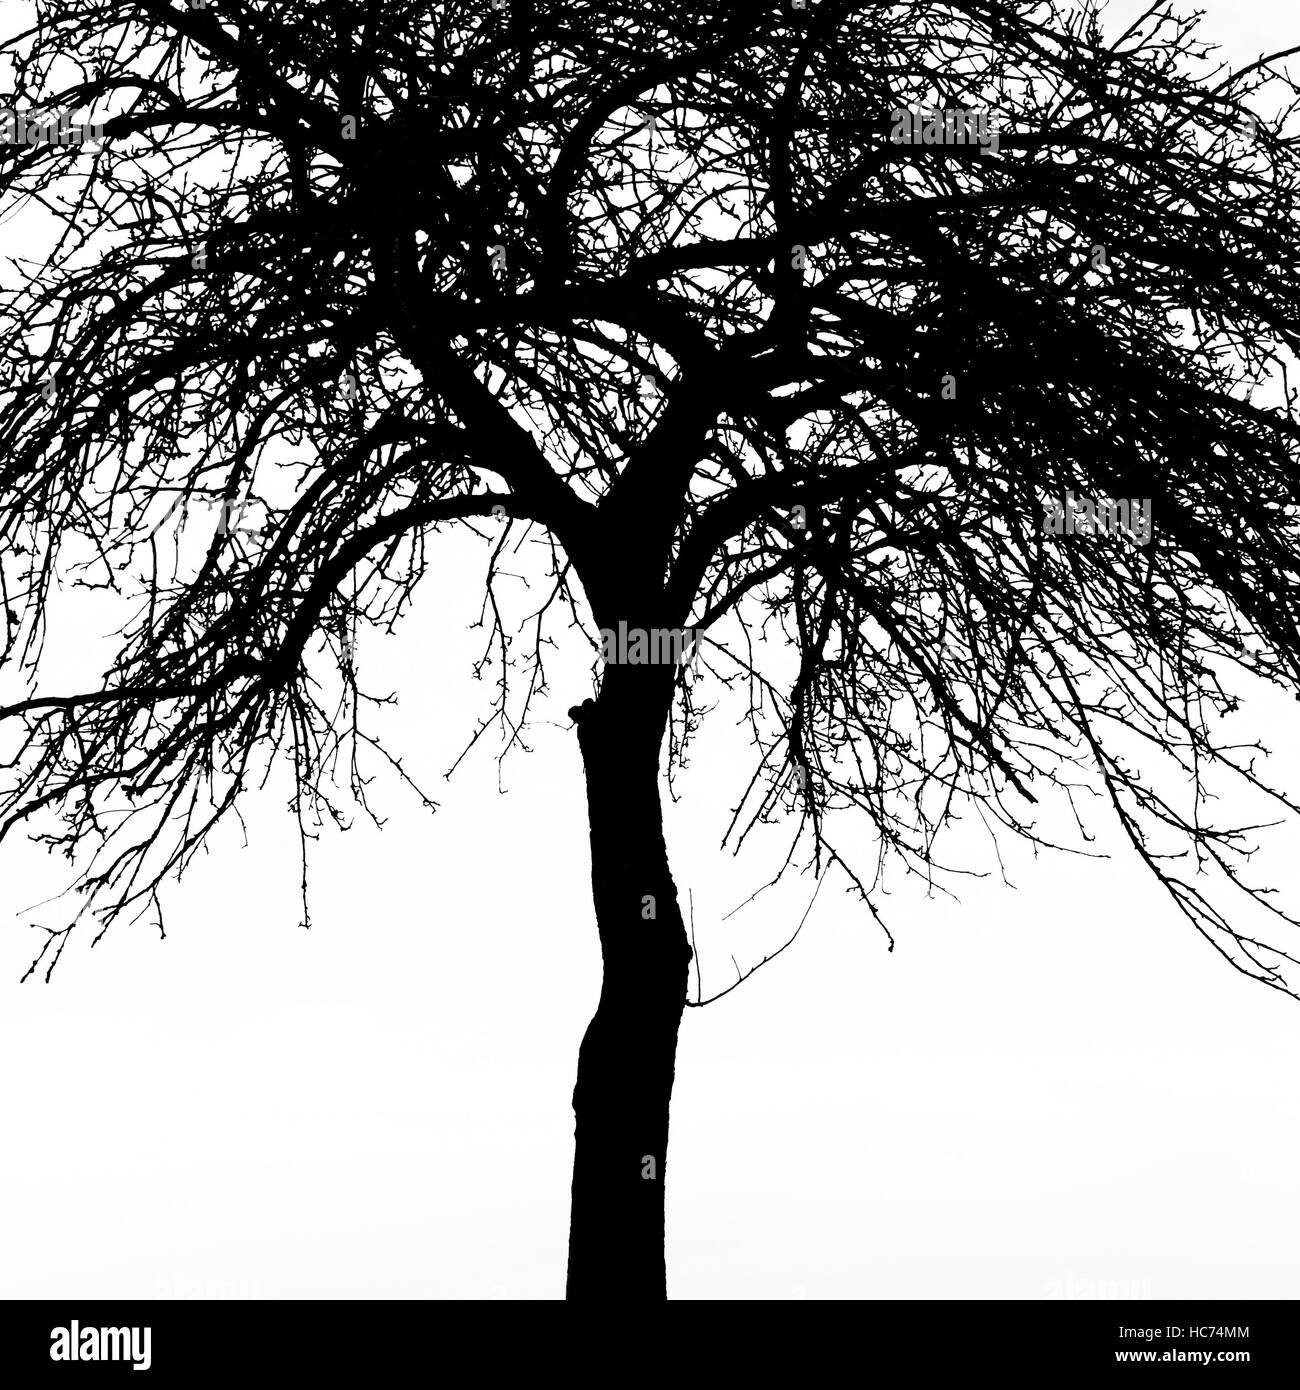 Tree silhouette Stock Photo